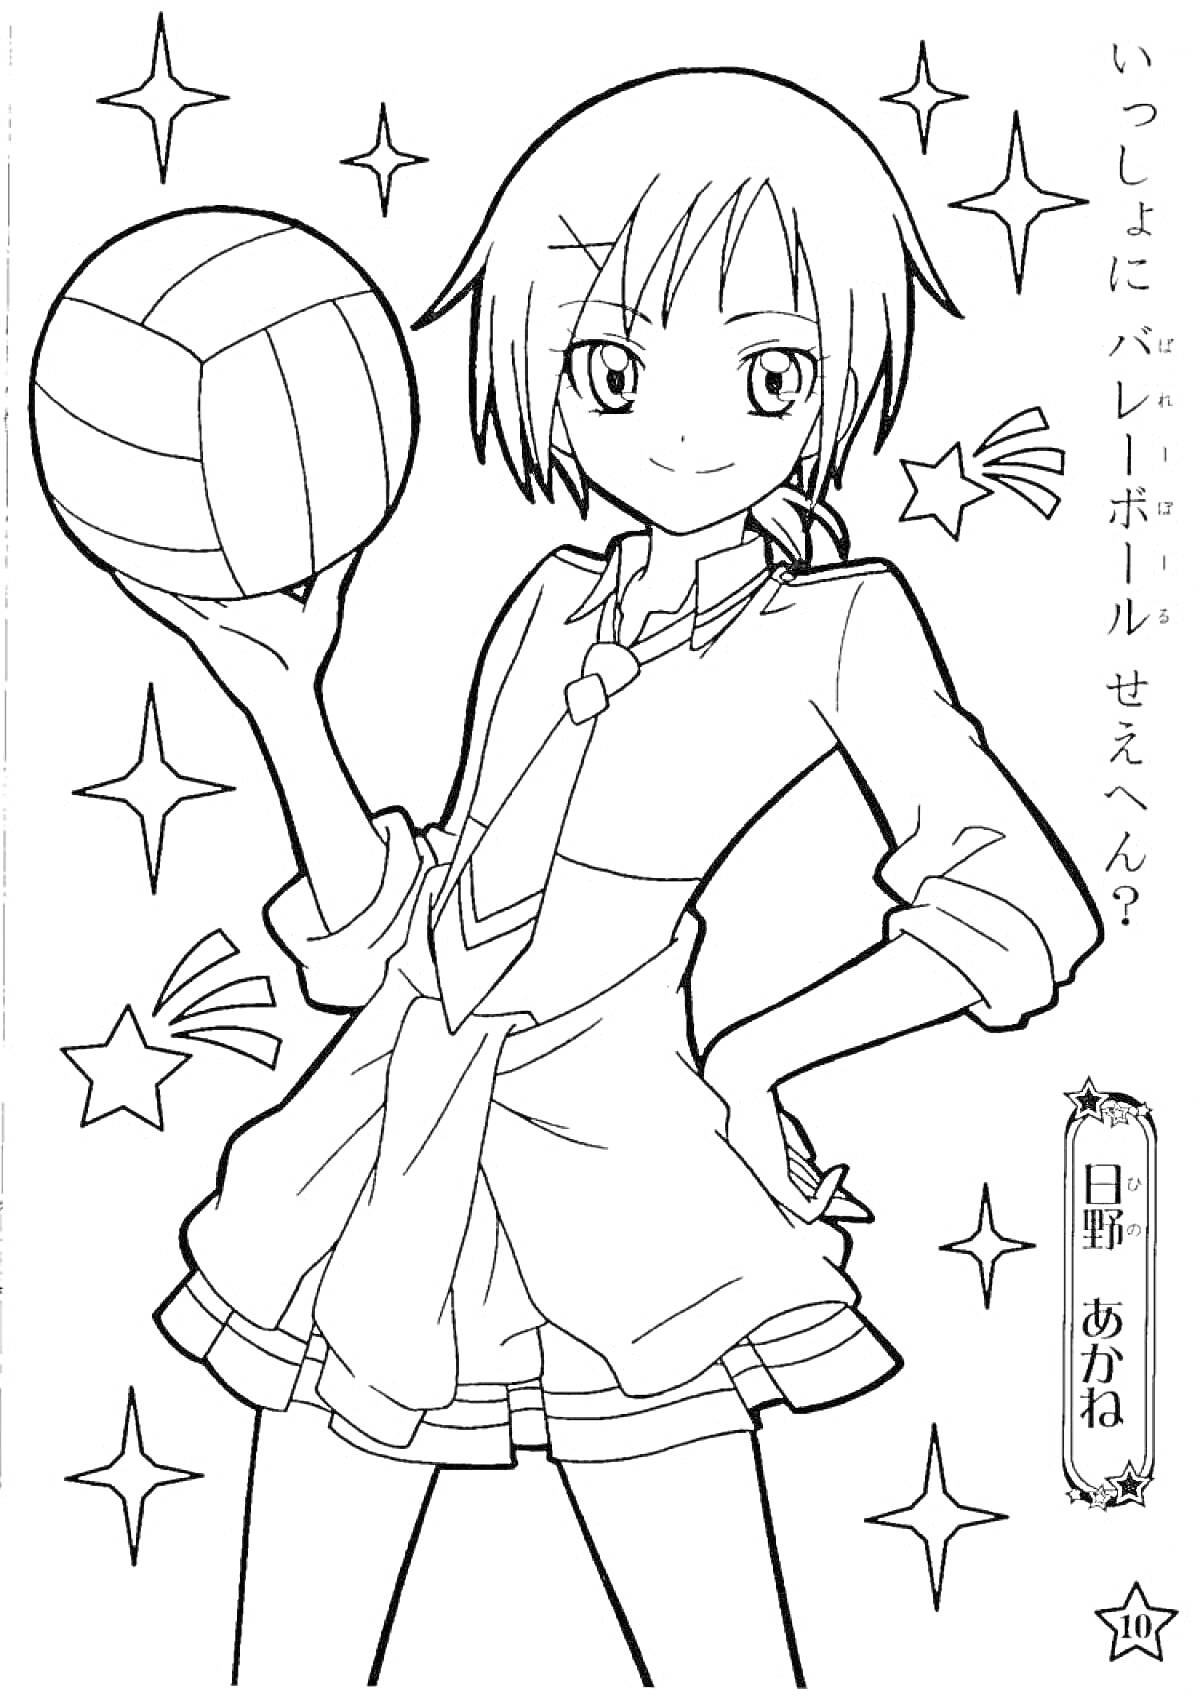 Раскраска Девочка с короткими волосами и волейбольным мячом, звездочки вокруг